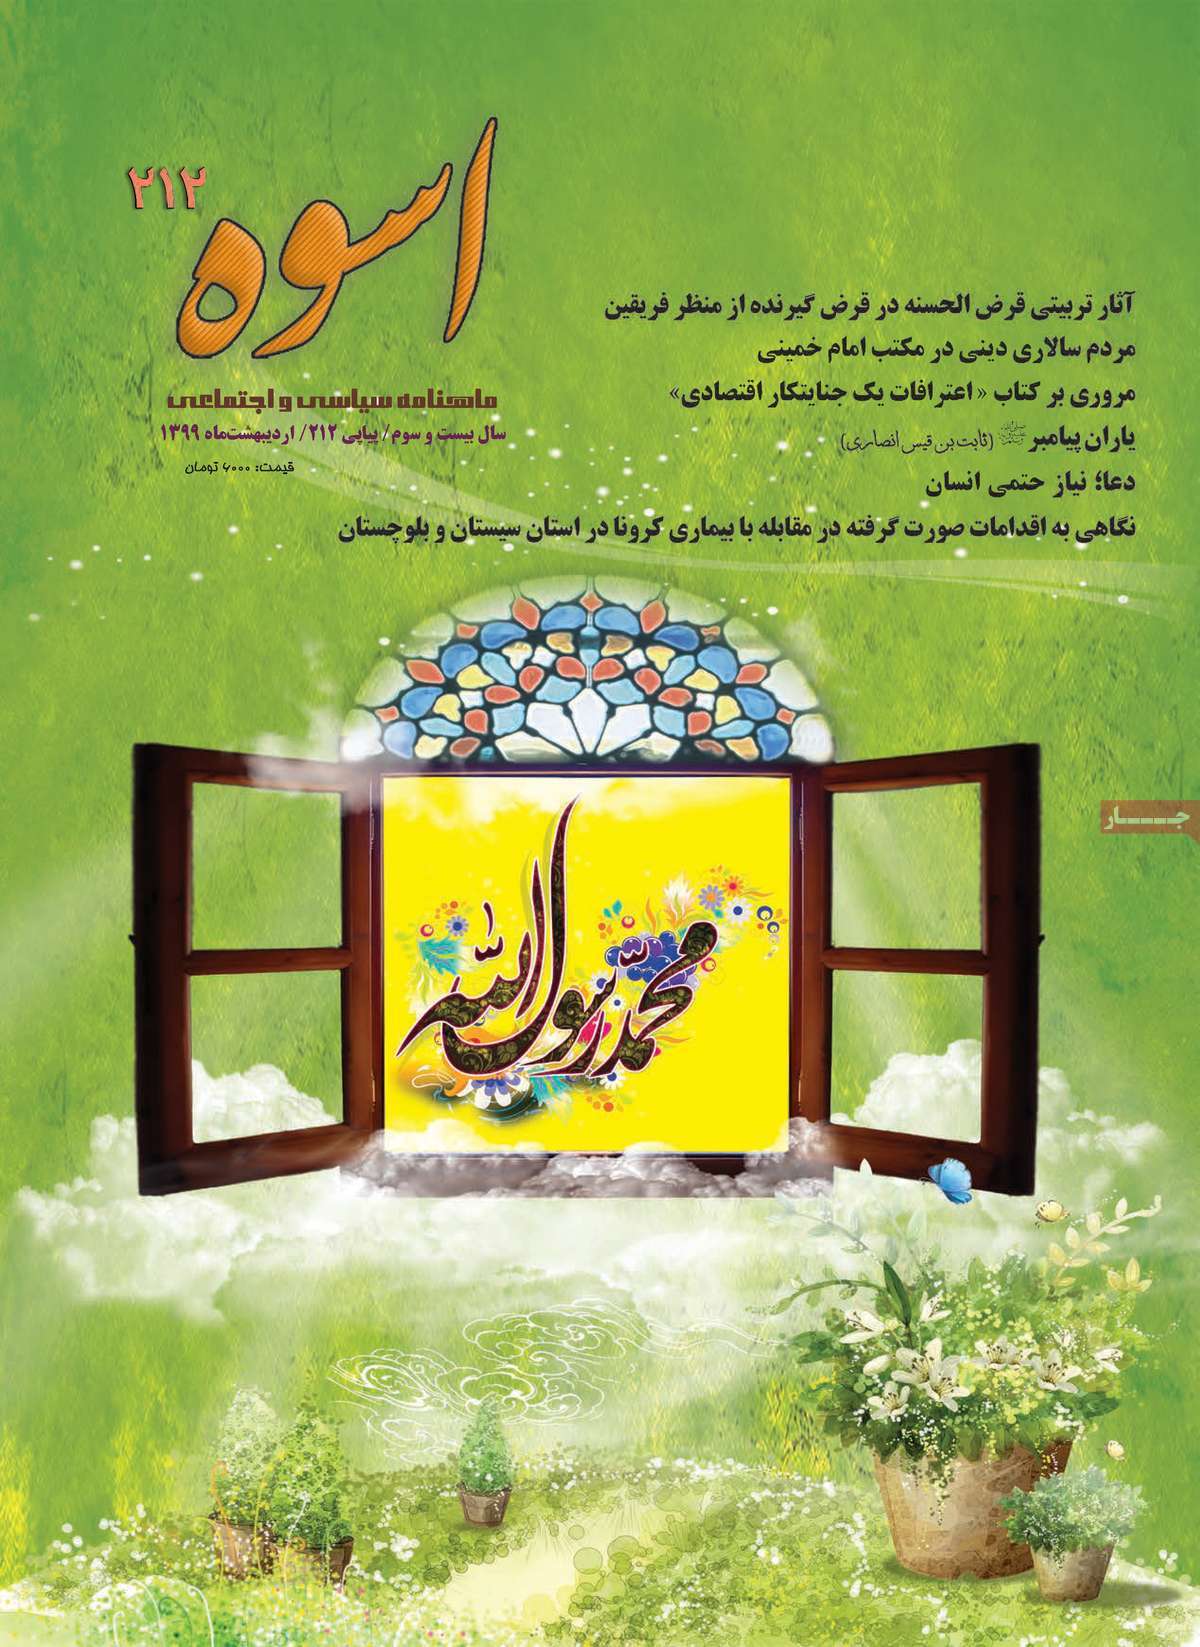 صفحه نخست مجله اسوه - سه شنبه, ۱۳ خرداد ۱۳۹۹